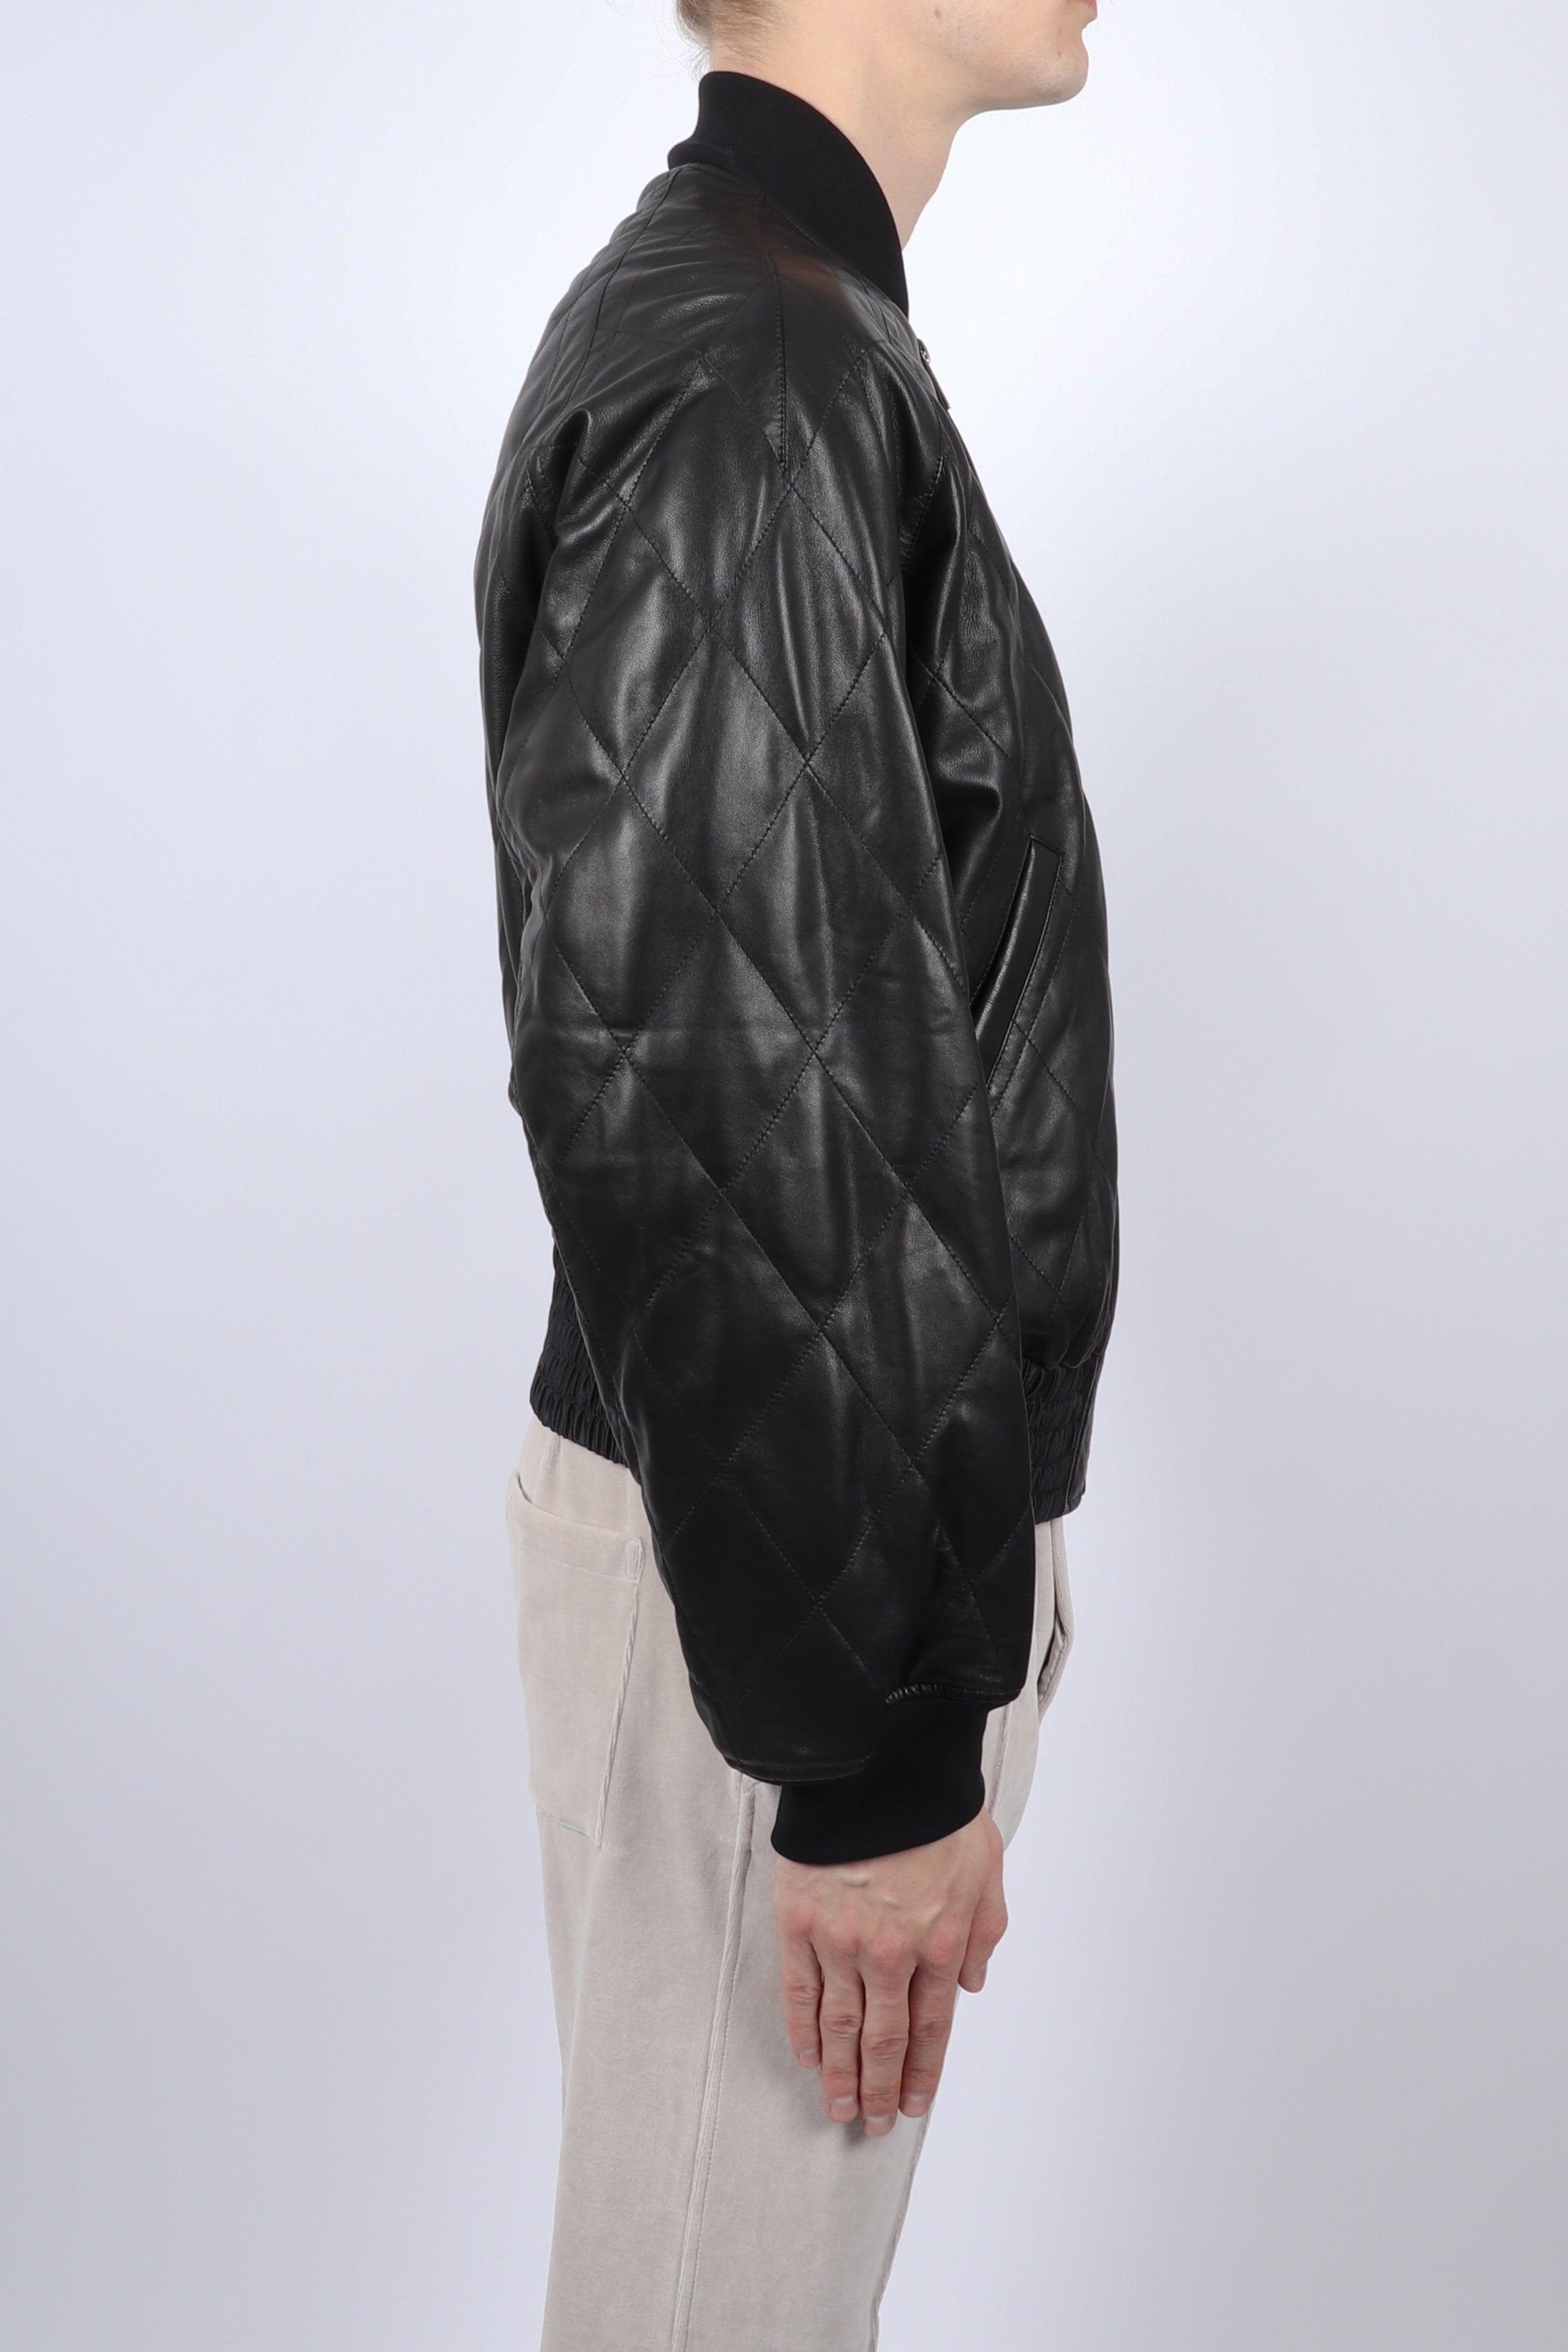 Haider Ackermann Lunar Leather Bomber Jacket in Black for Men - Lyst